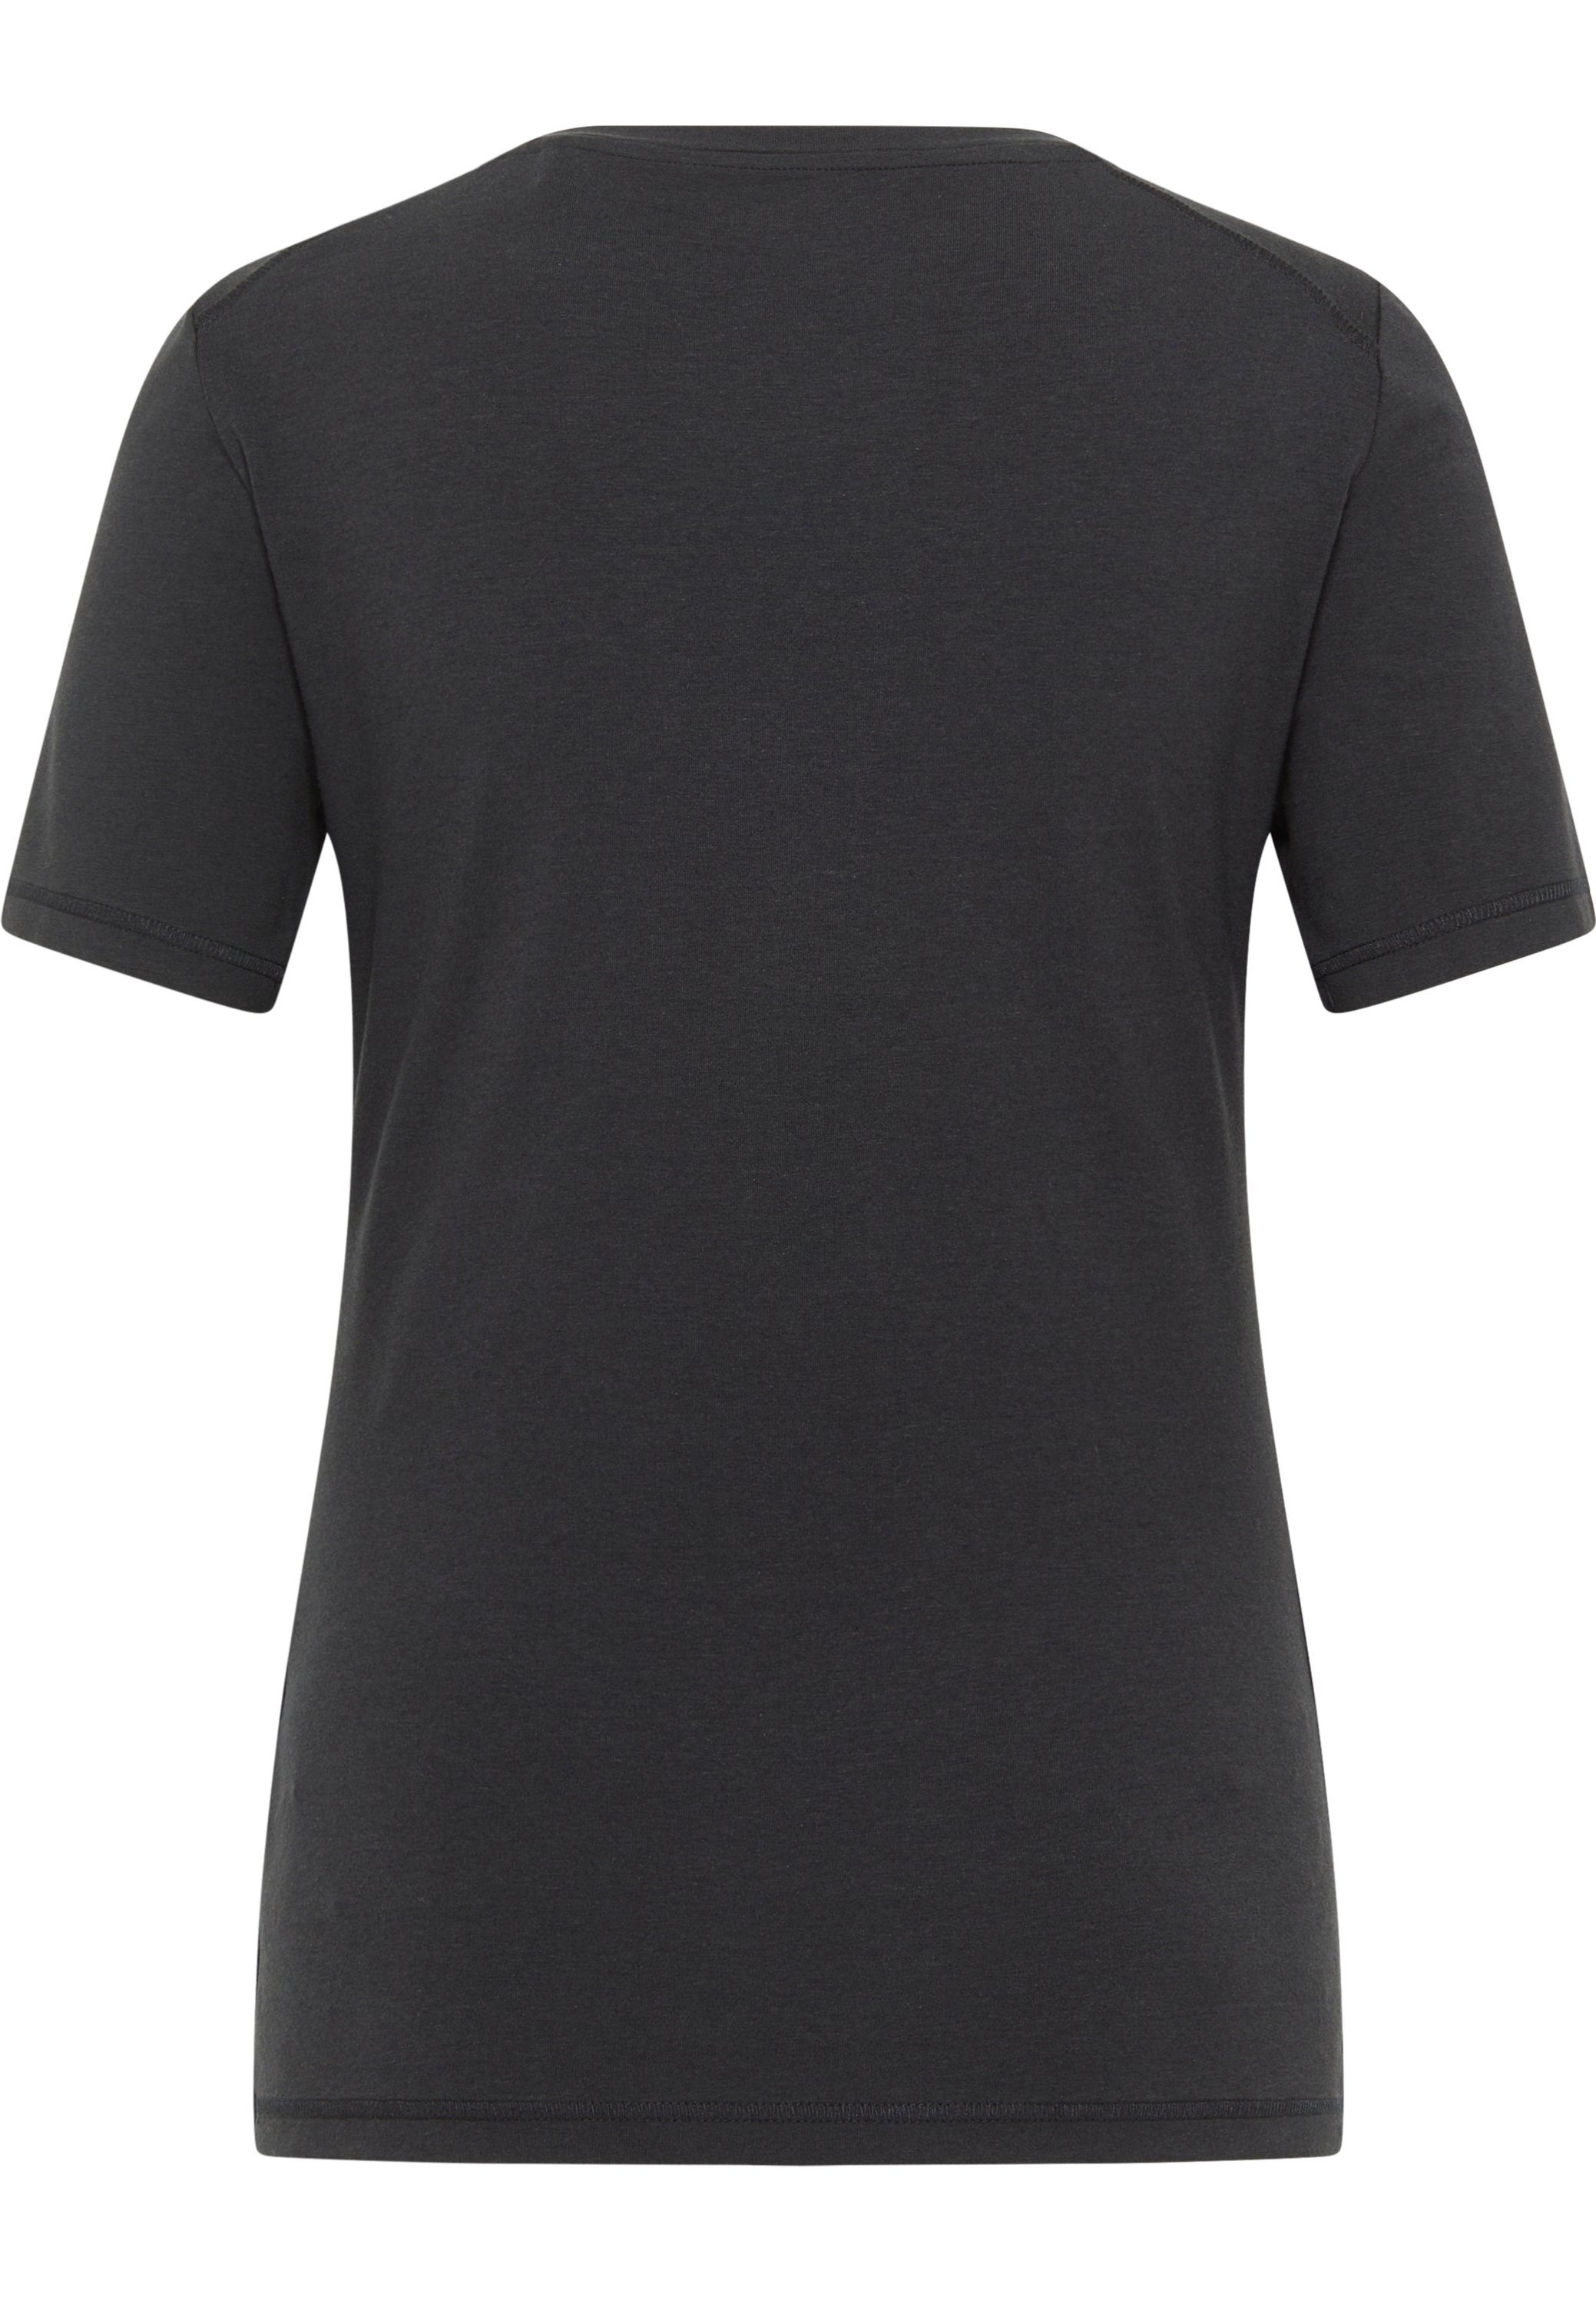 MUSTANG Kurzarmshirt T-Shirt, mit Elasthan Baumwoll-Modalmischung